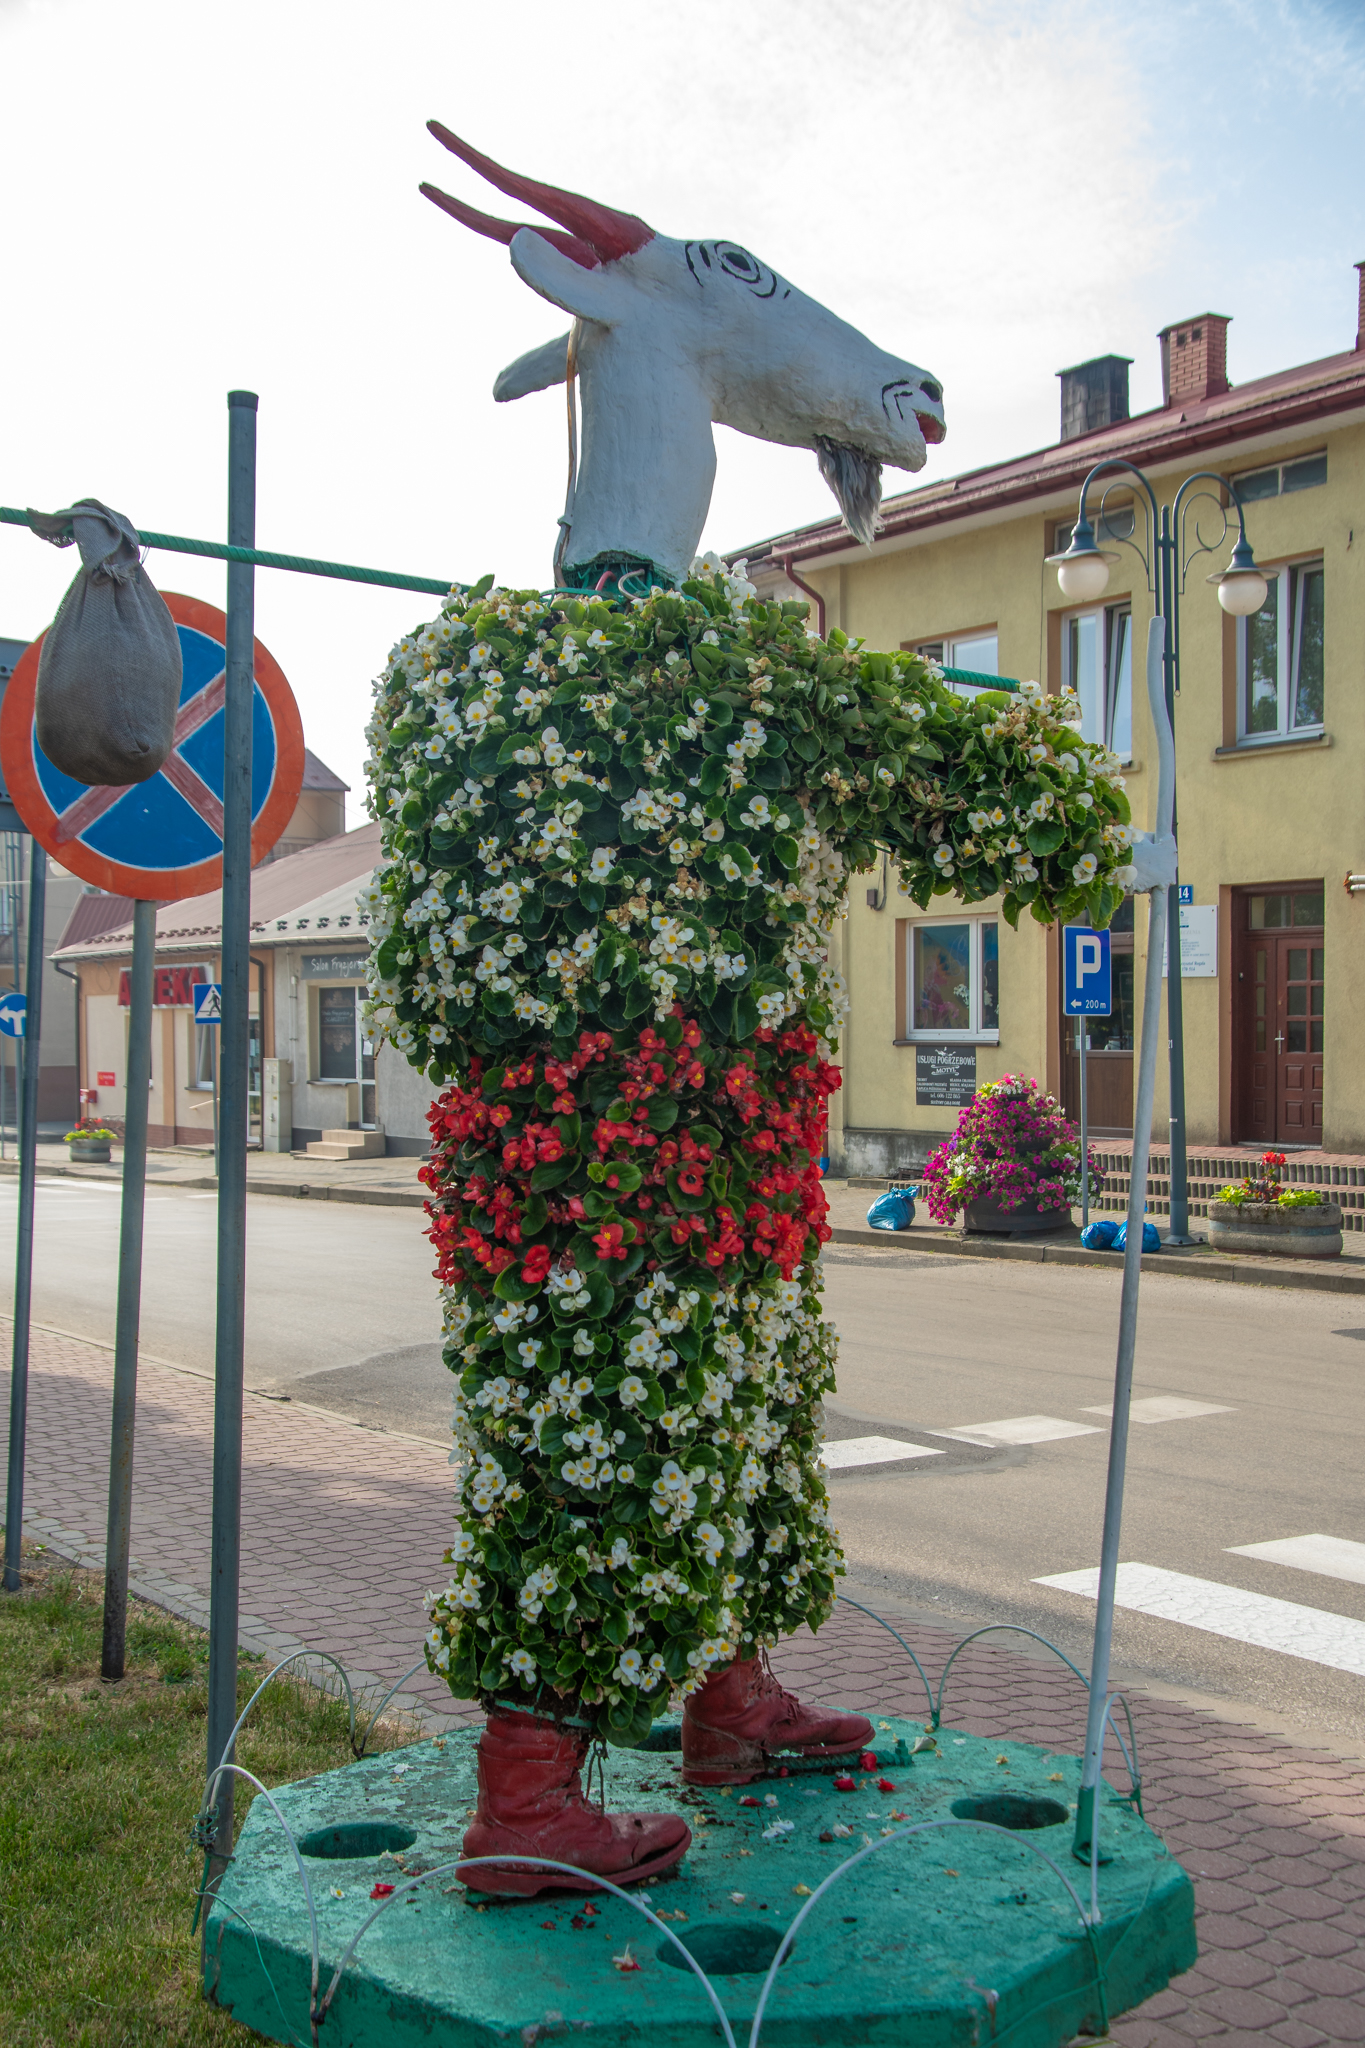 Duża figura koziołka Matołka zrobiona ze styropianu i cała obrośnięta kwiatami.